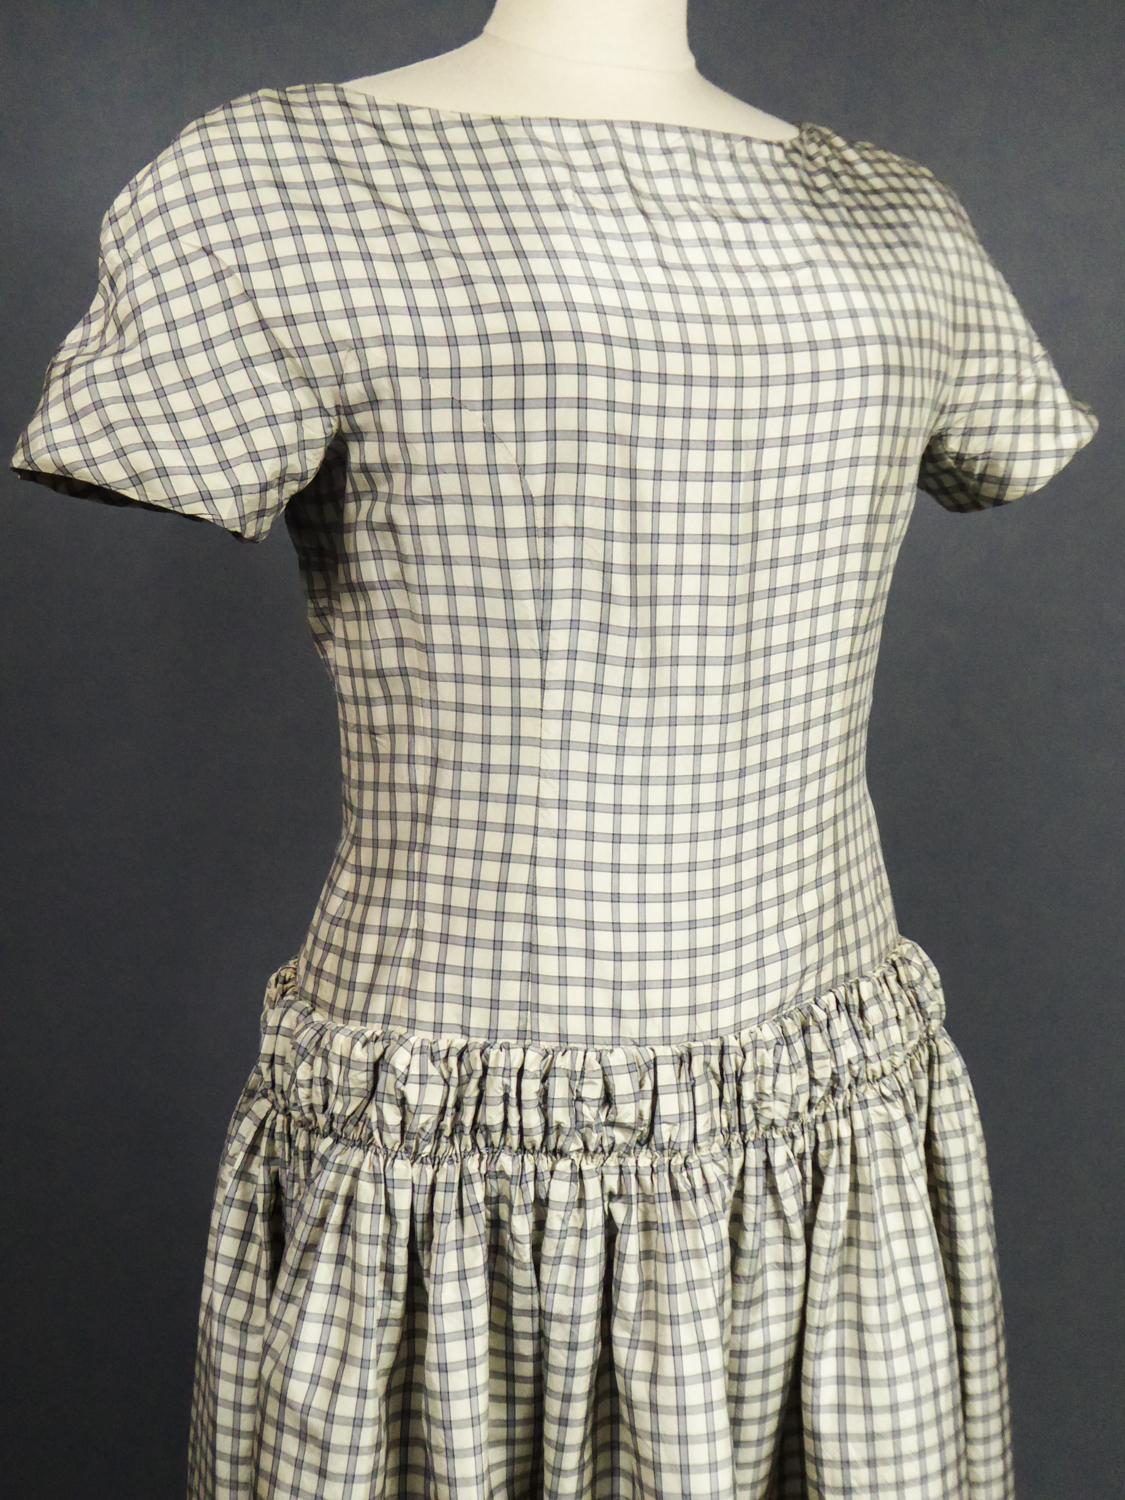 A Cristobal Balenciaga Couture Sac Dress in Plaid Taffeta n°55418 Circa 1958 1